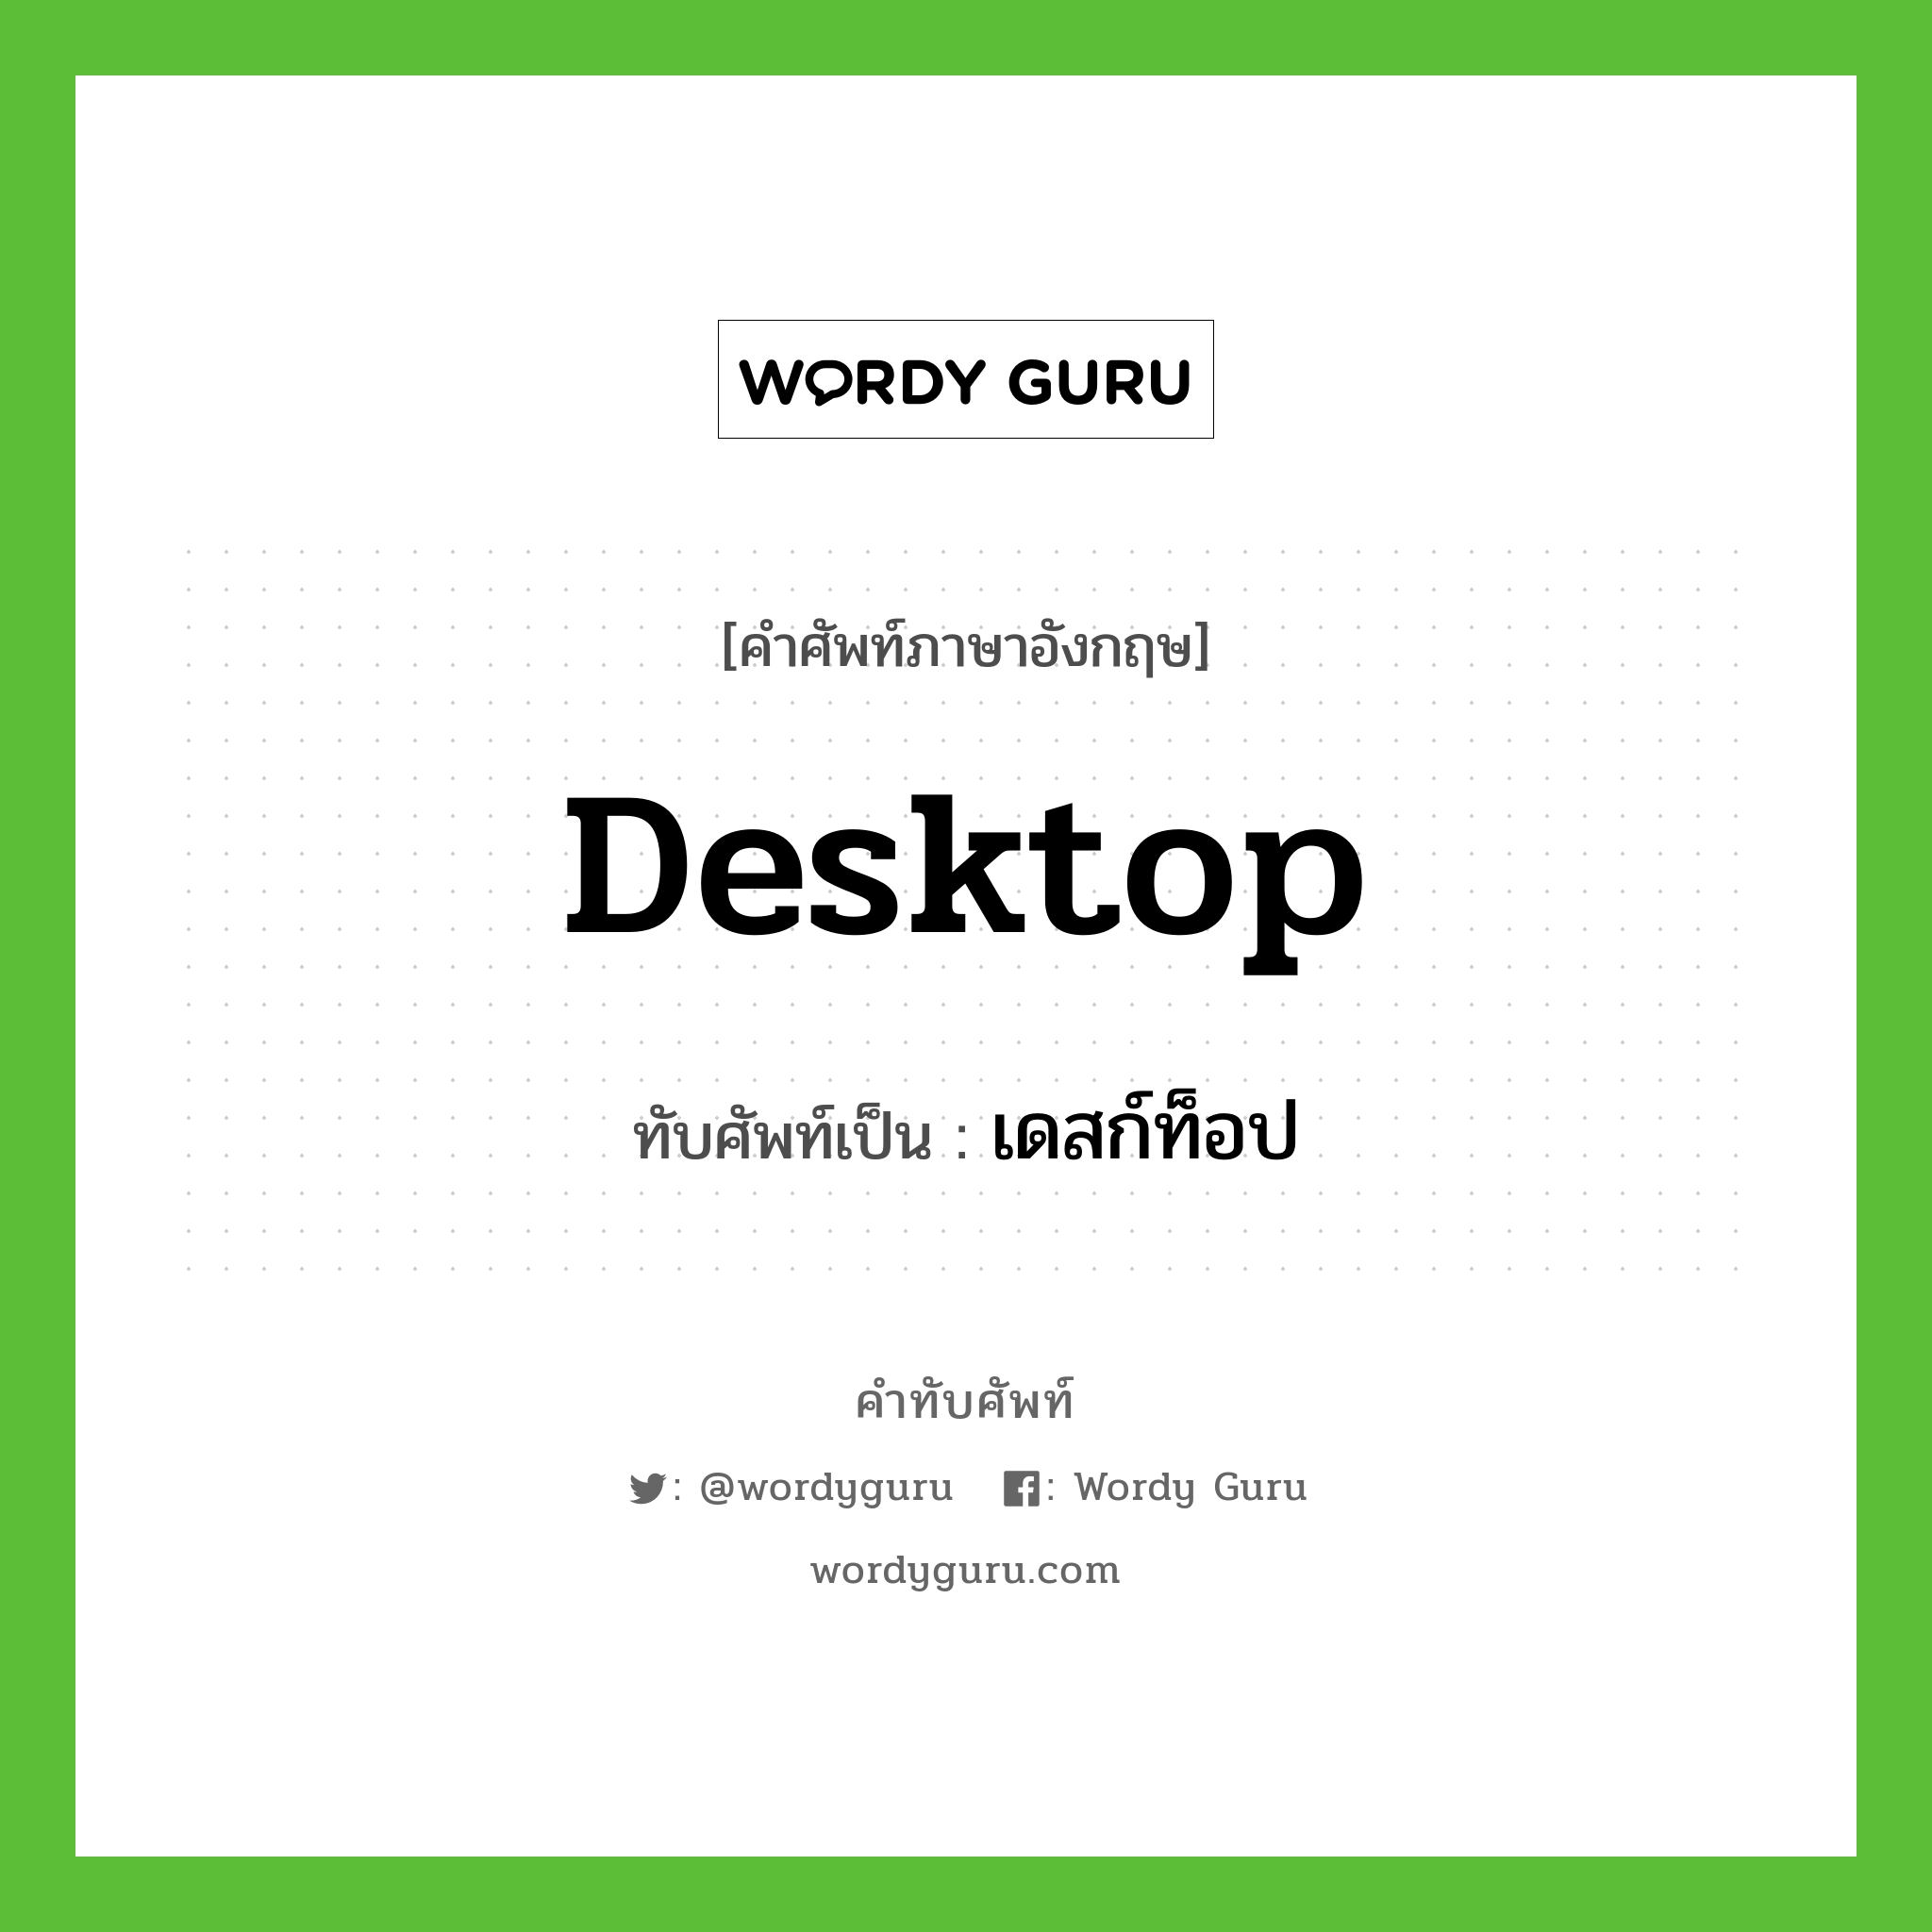 desktop เขียนเป็นคำไทยว่าอะไร?, คำศัพท์ภาษาอังกฤษ desktop ทับศัพท์เป็น เดสก์ท็อป